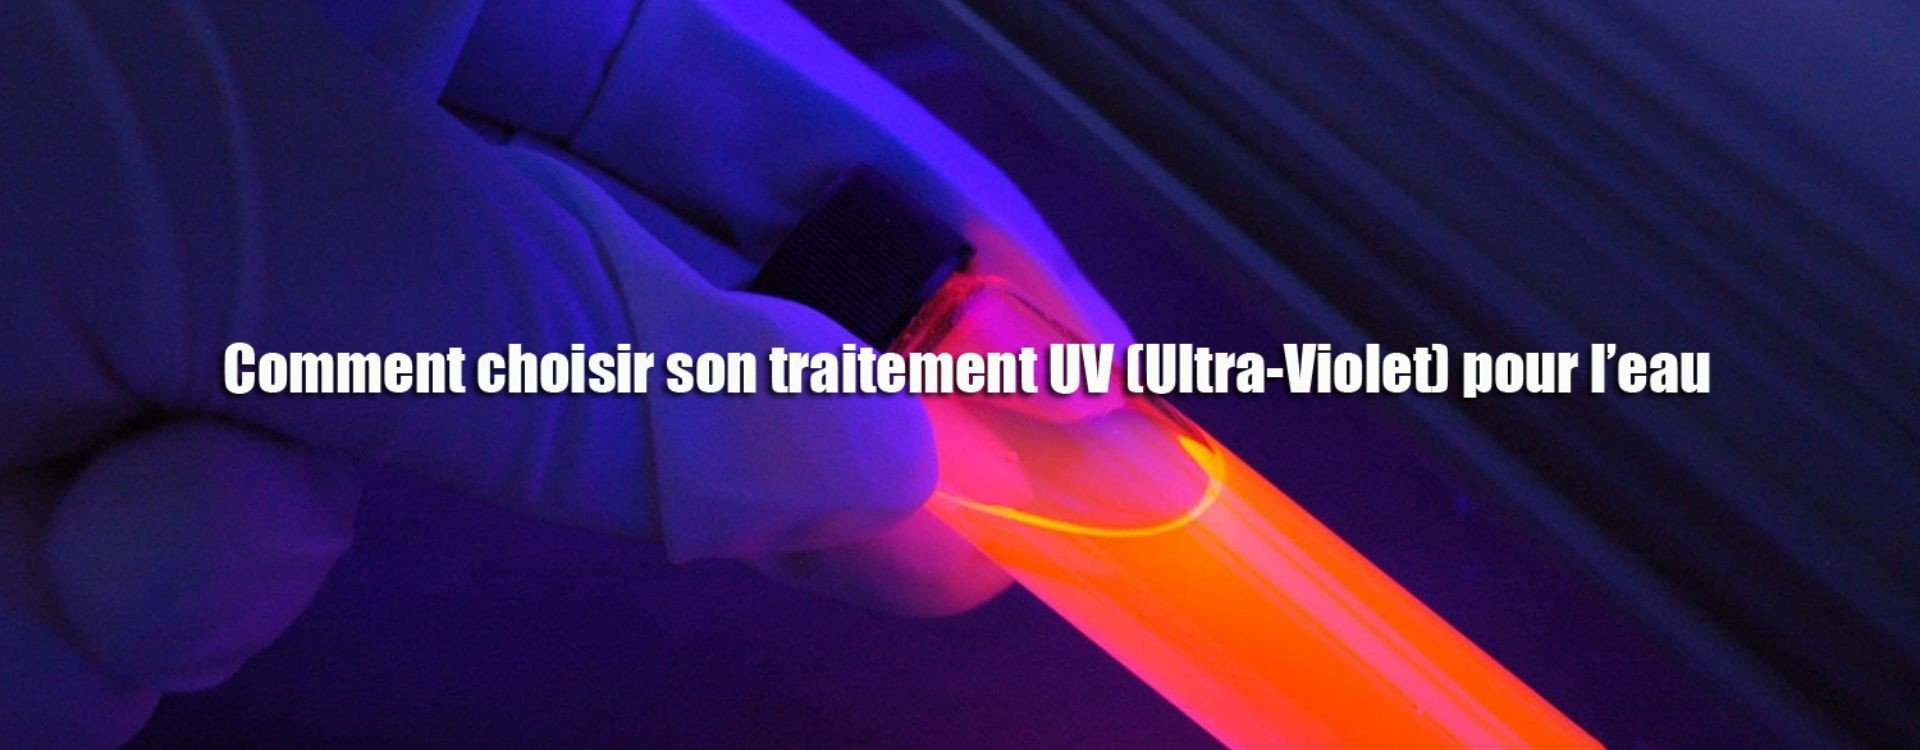 Traitement par Ultraviolet